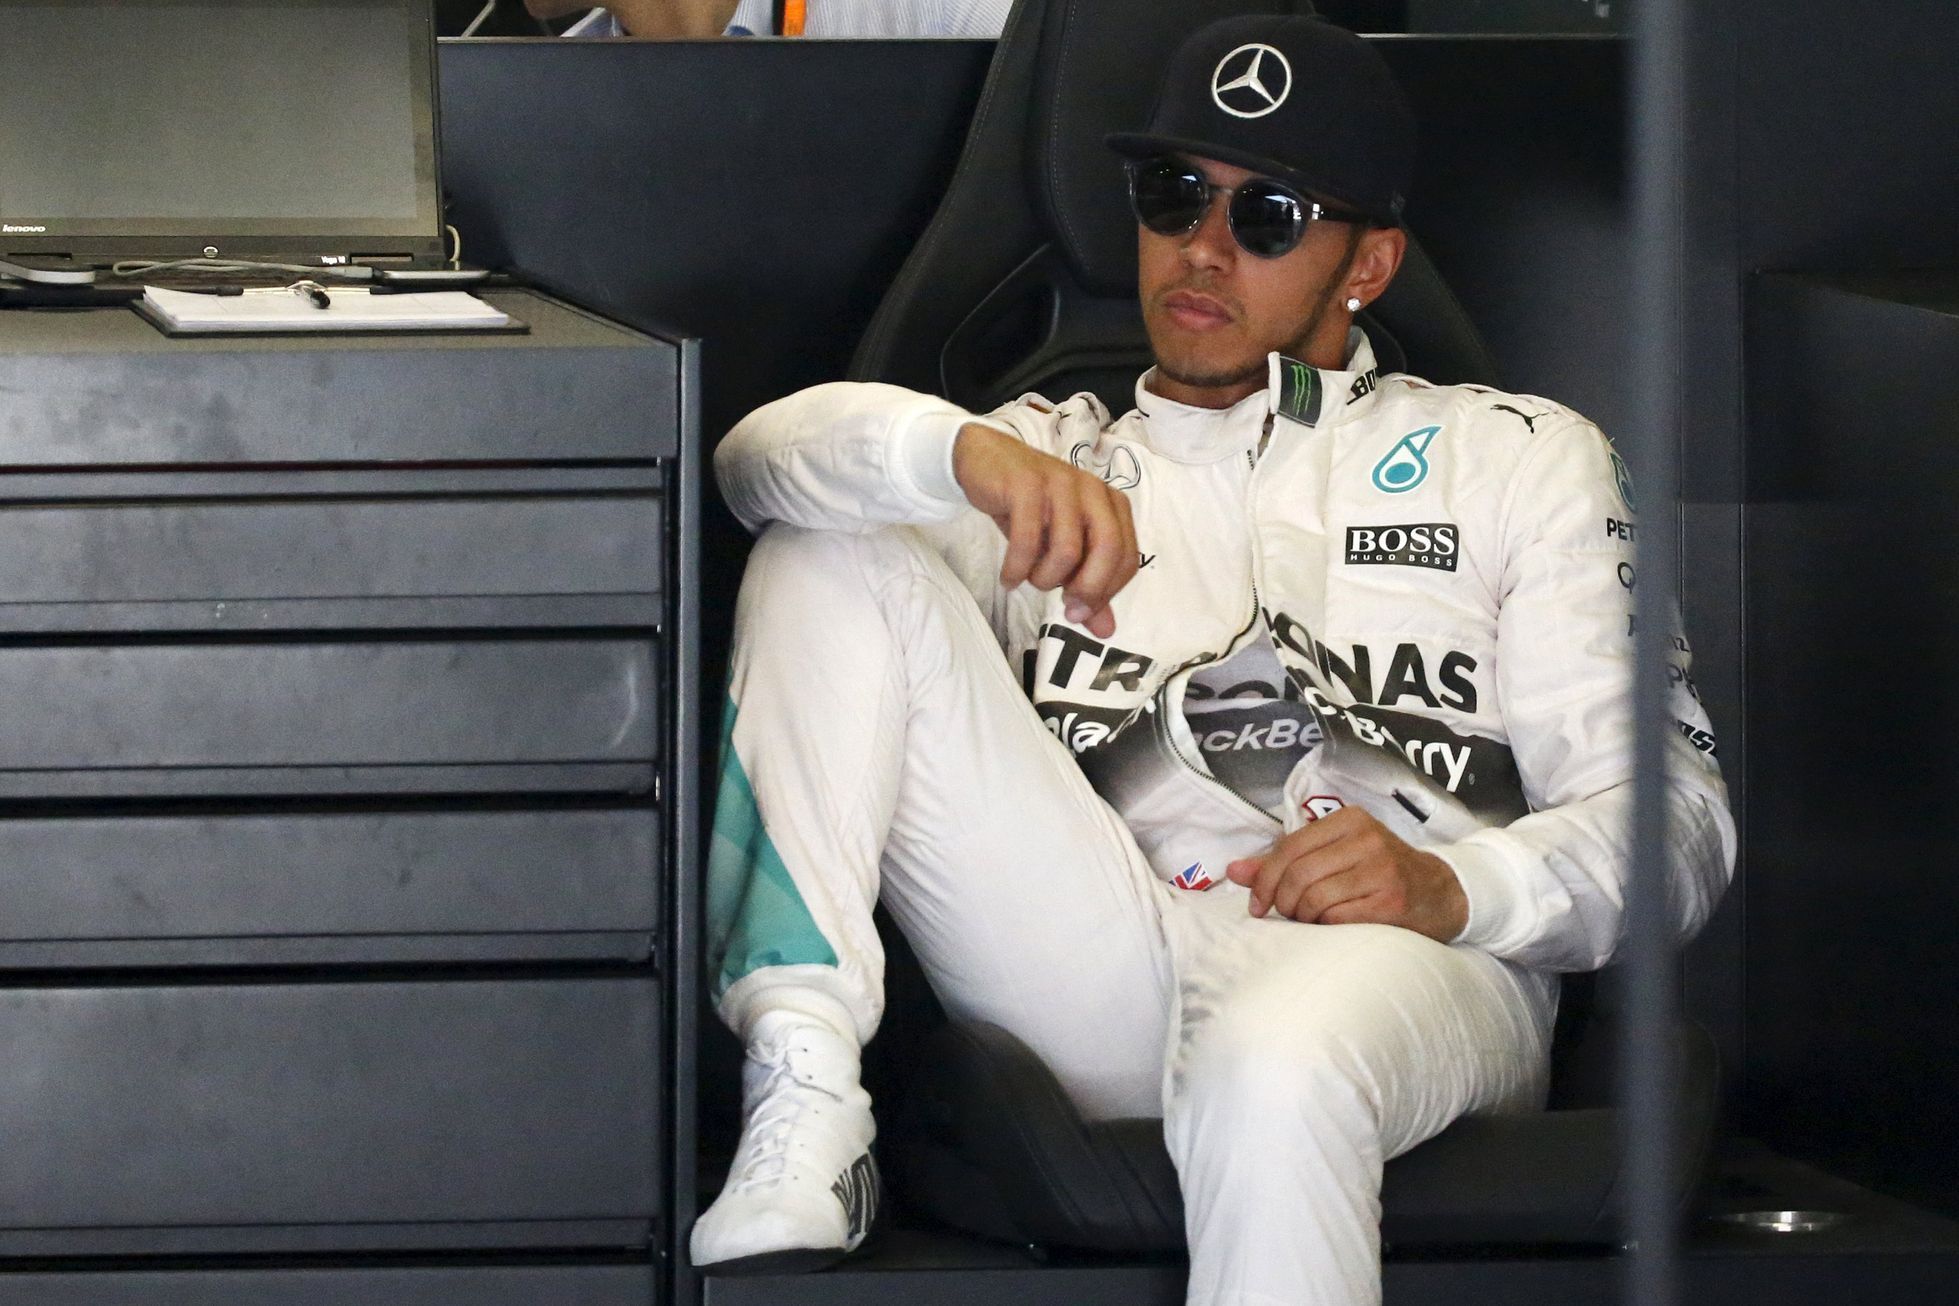 F1, VC Španělska 2015: Lewis Hamilton, Mercedes